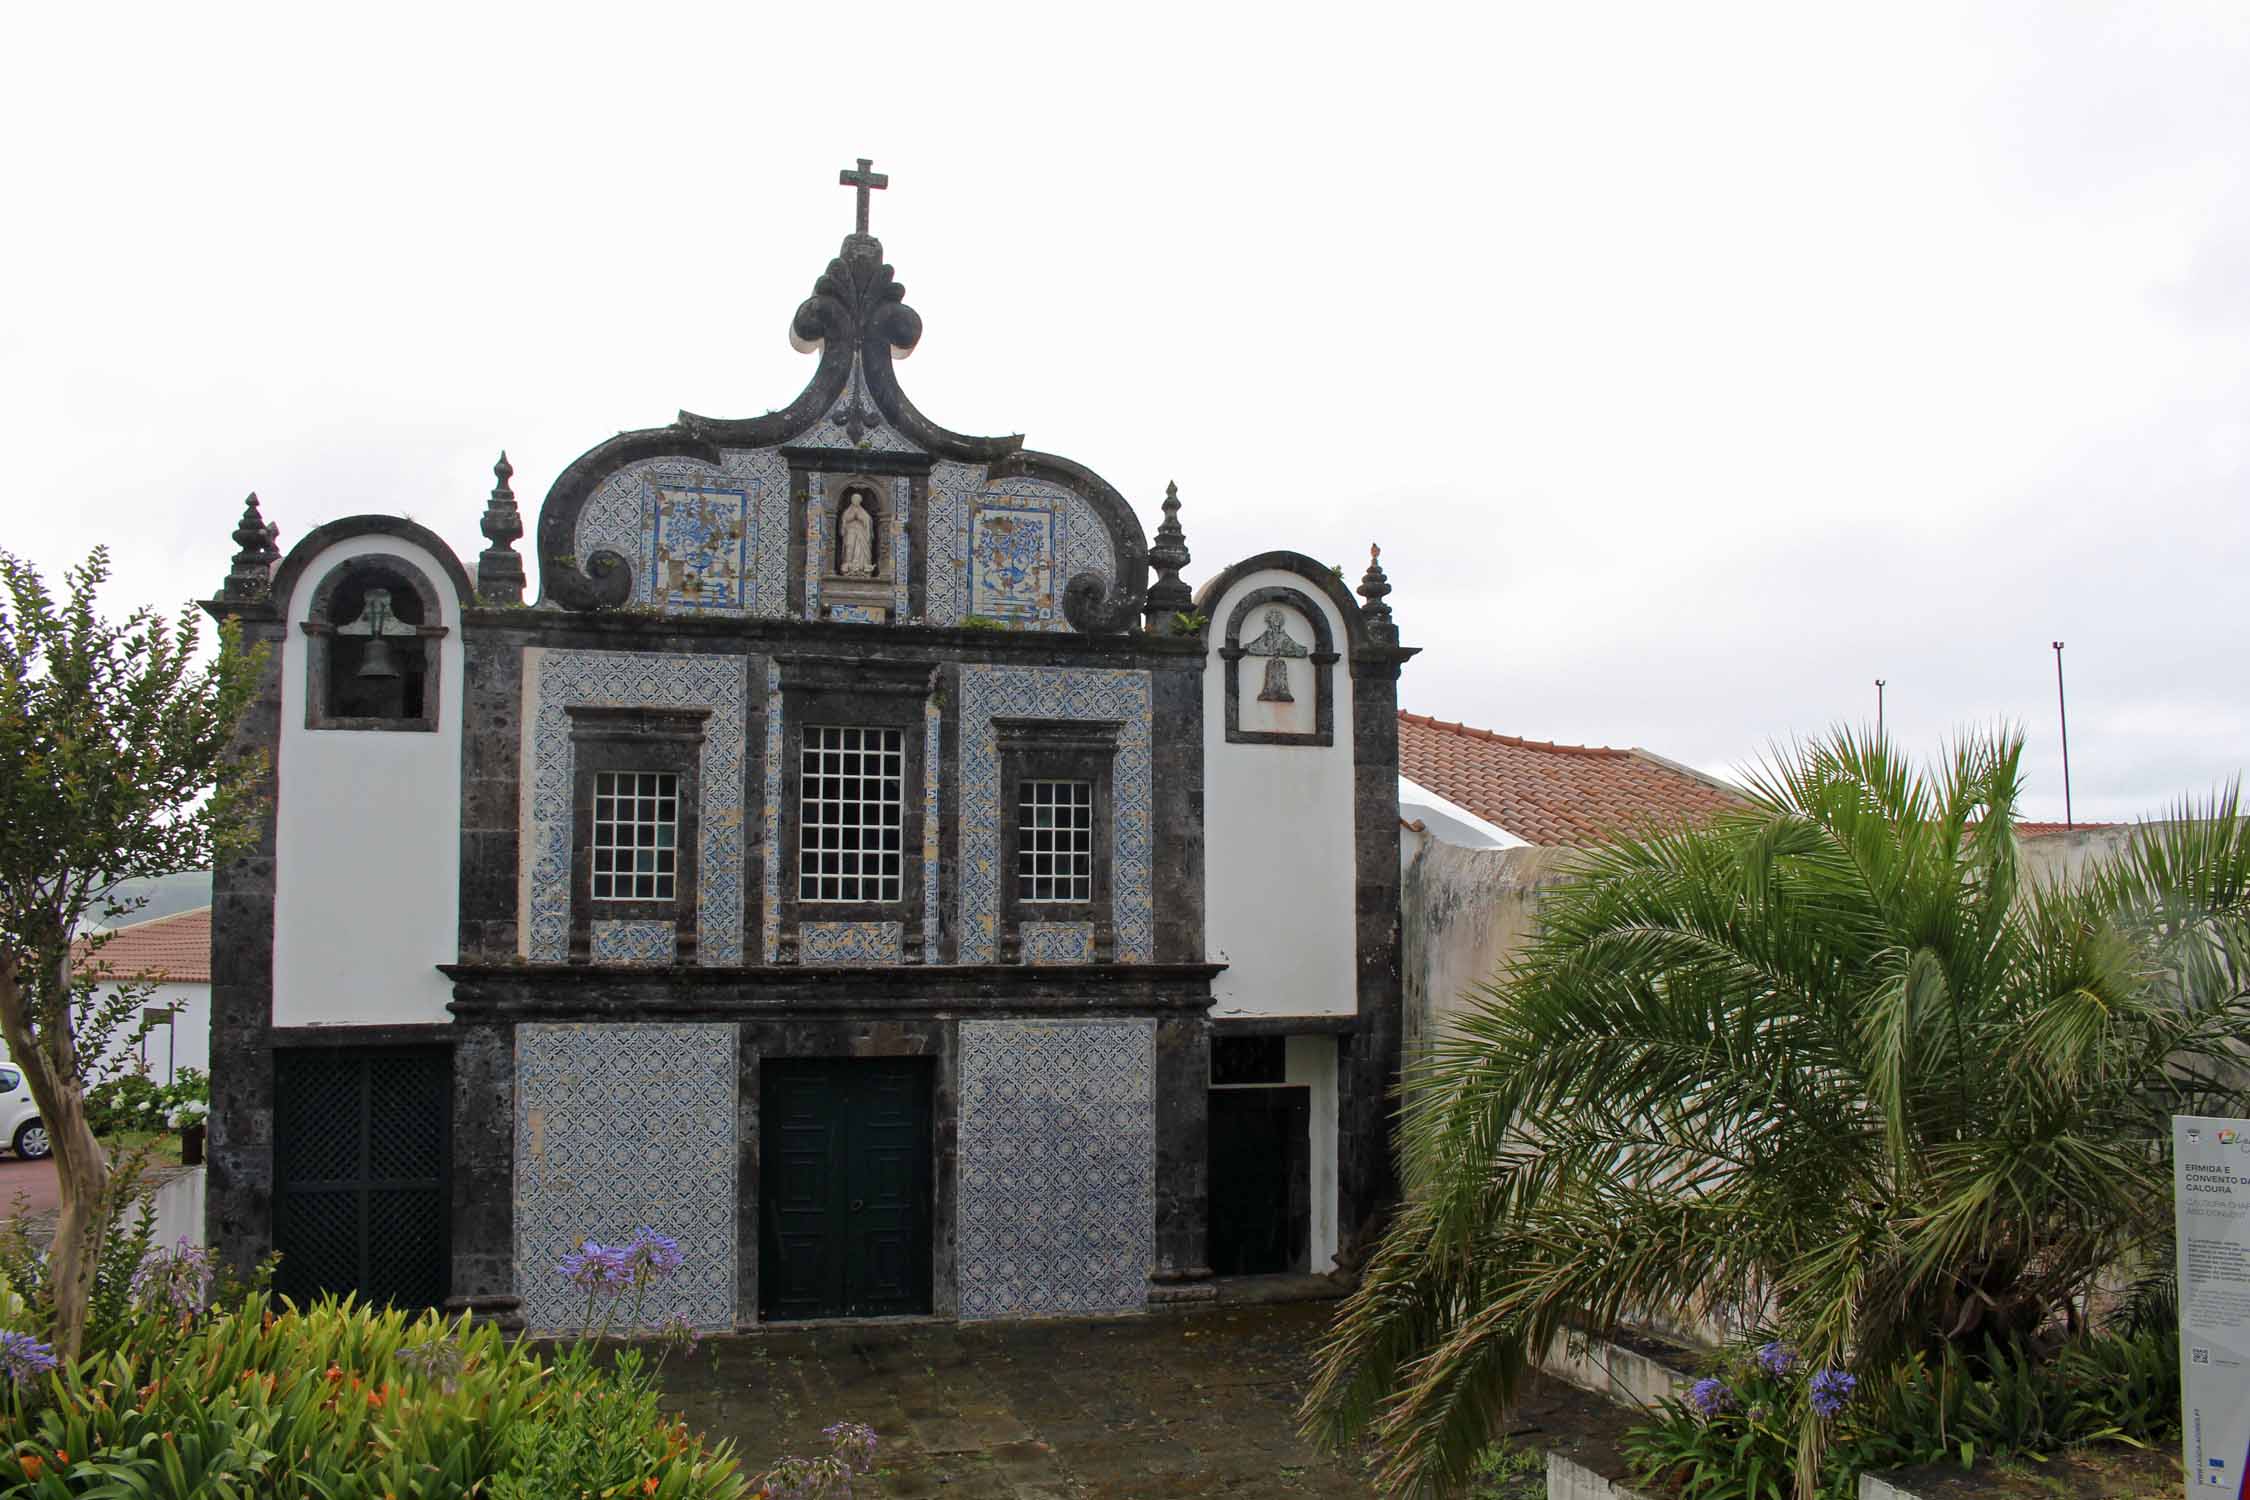 Le couvent de Caloura sur l'île de São Miguel, Açores